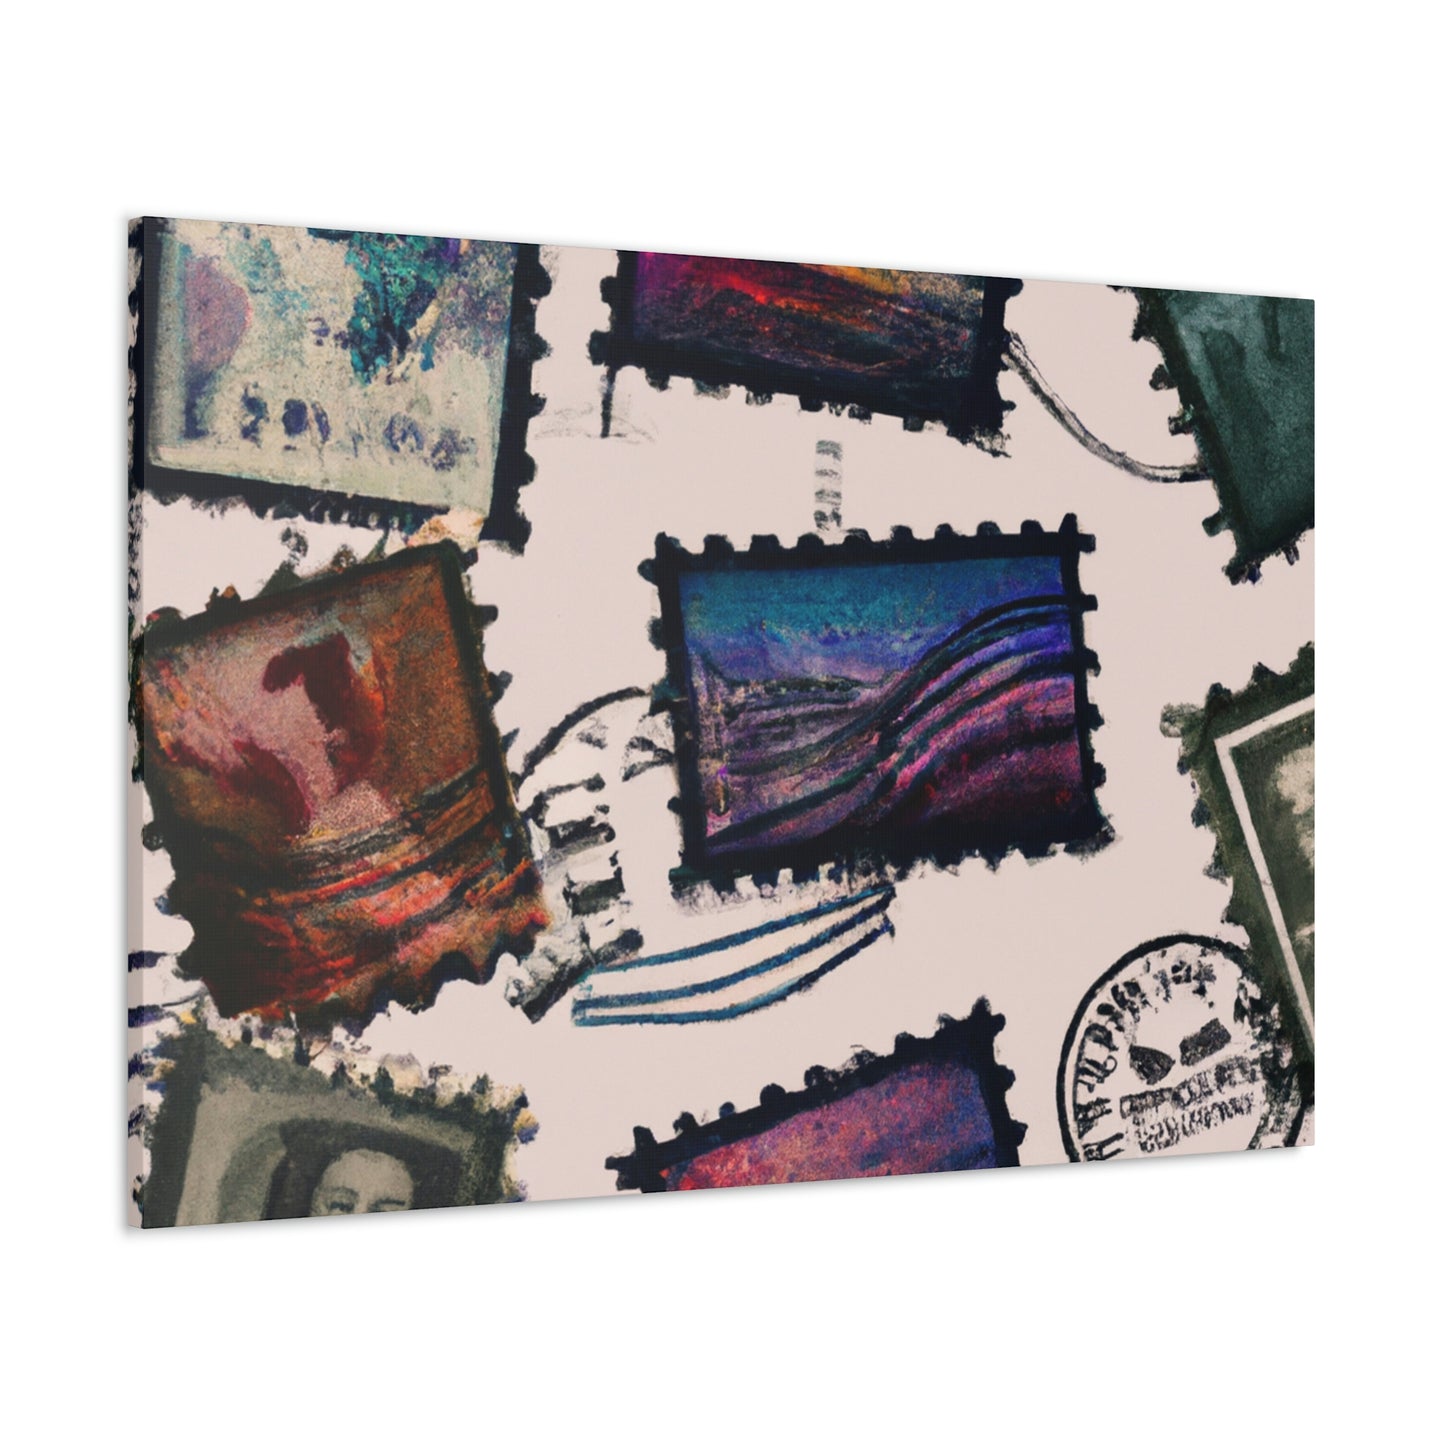 International Friendship postage stamp series. - Canvas